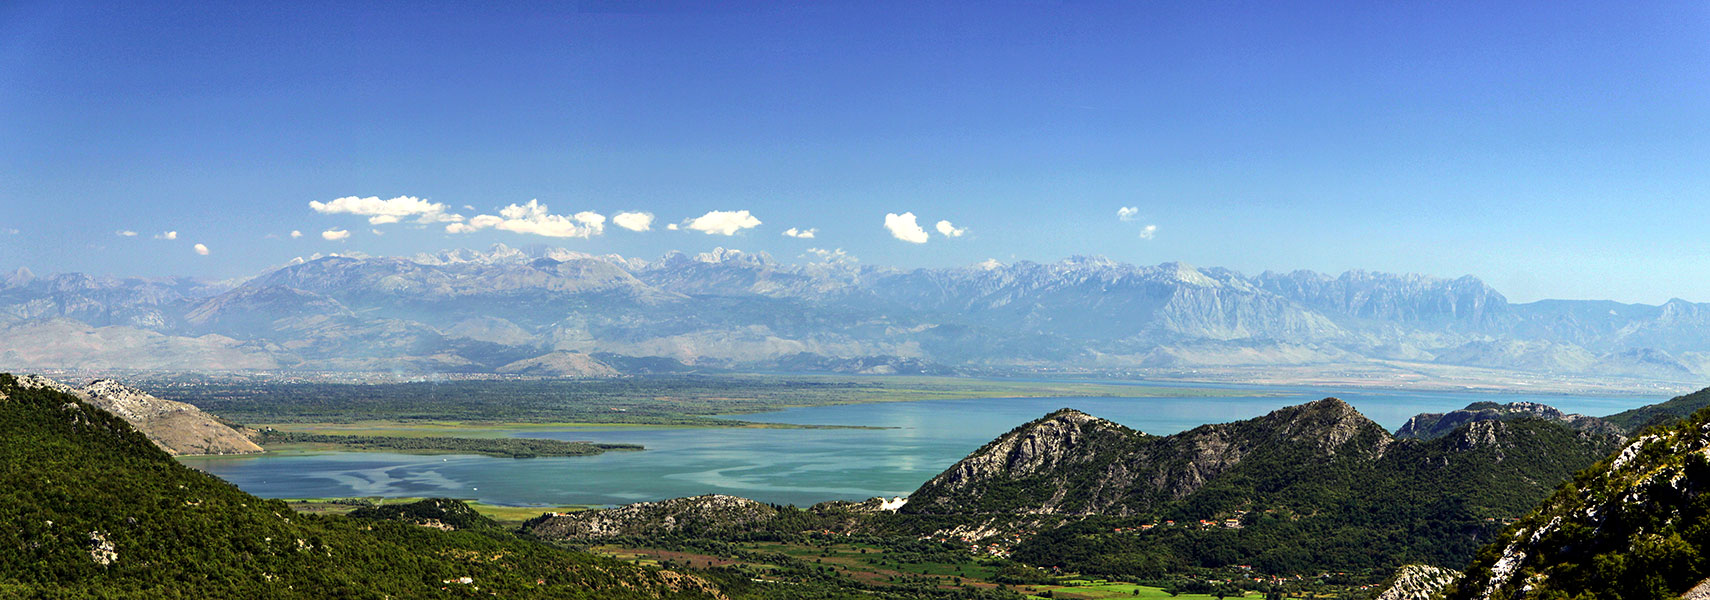 Lake Shkodër (Lake Skadar)